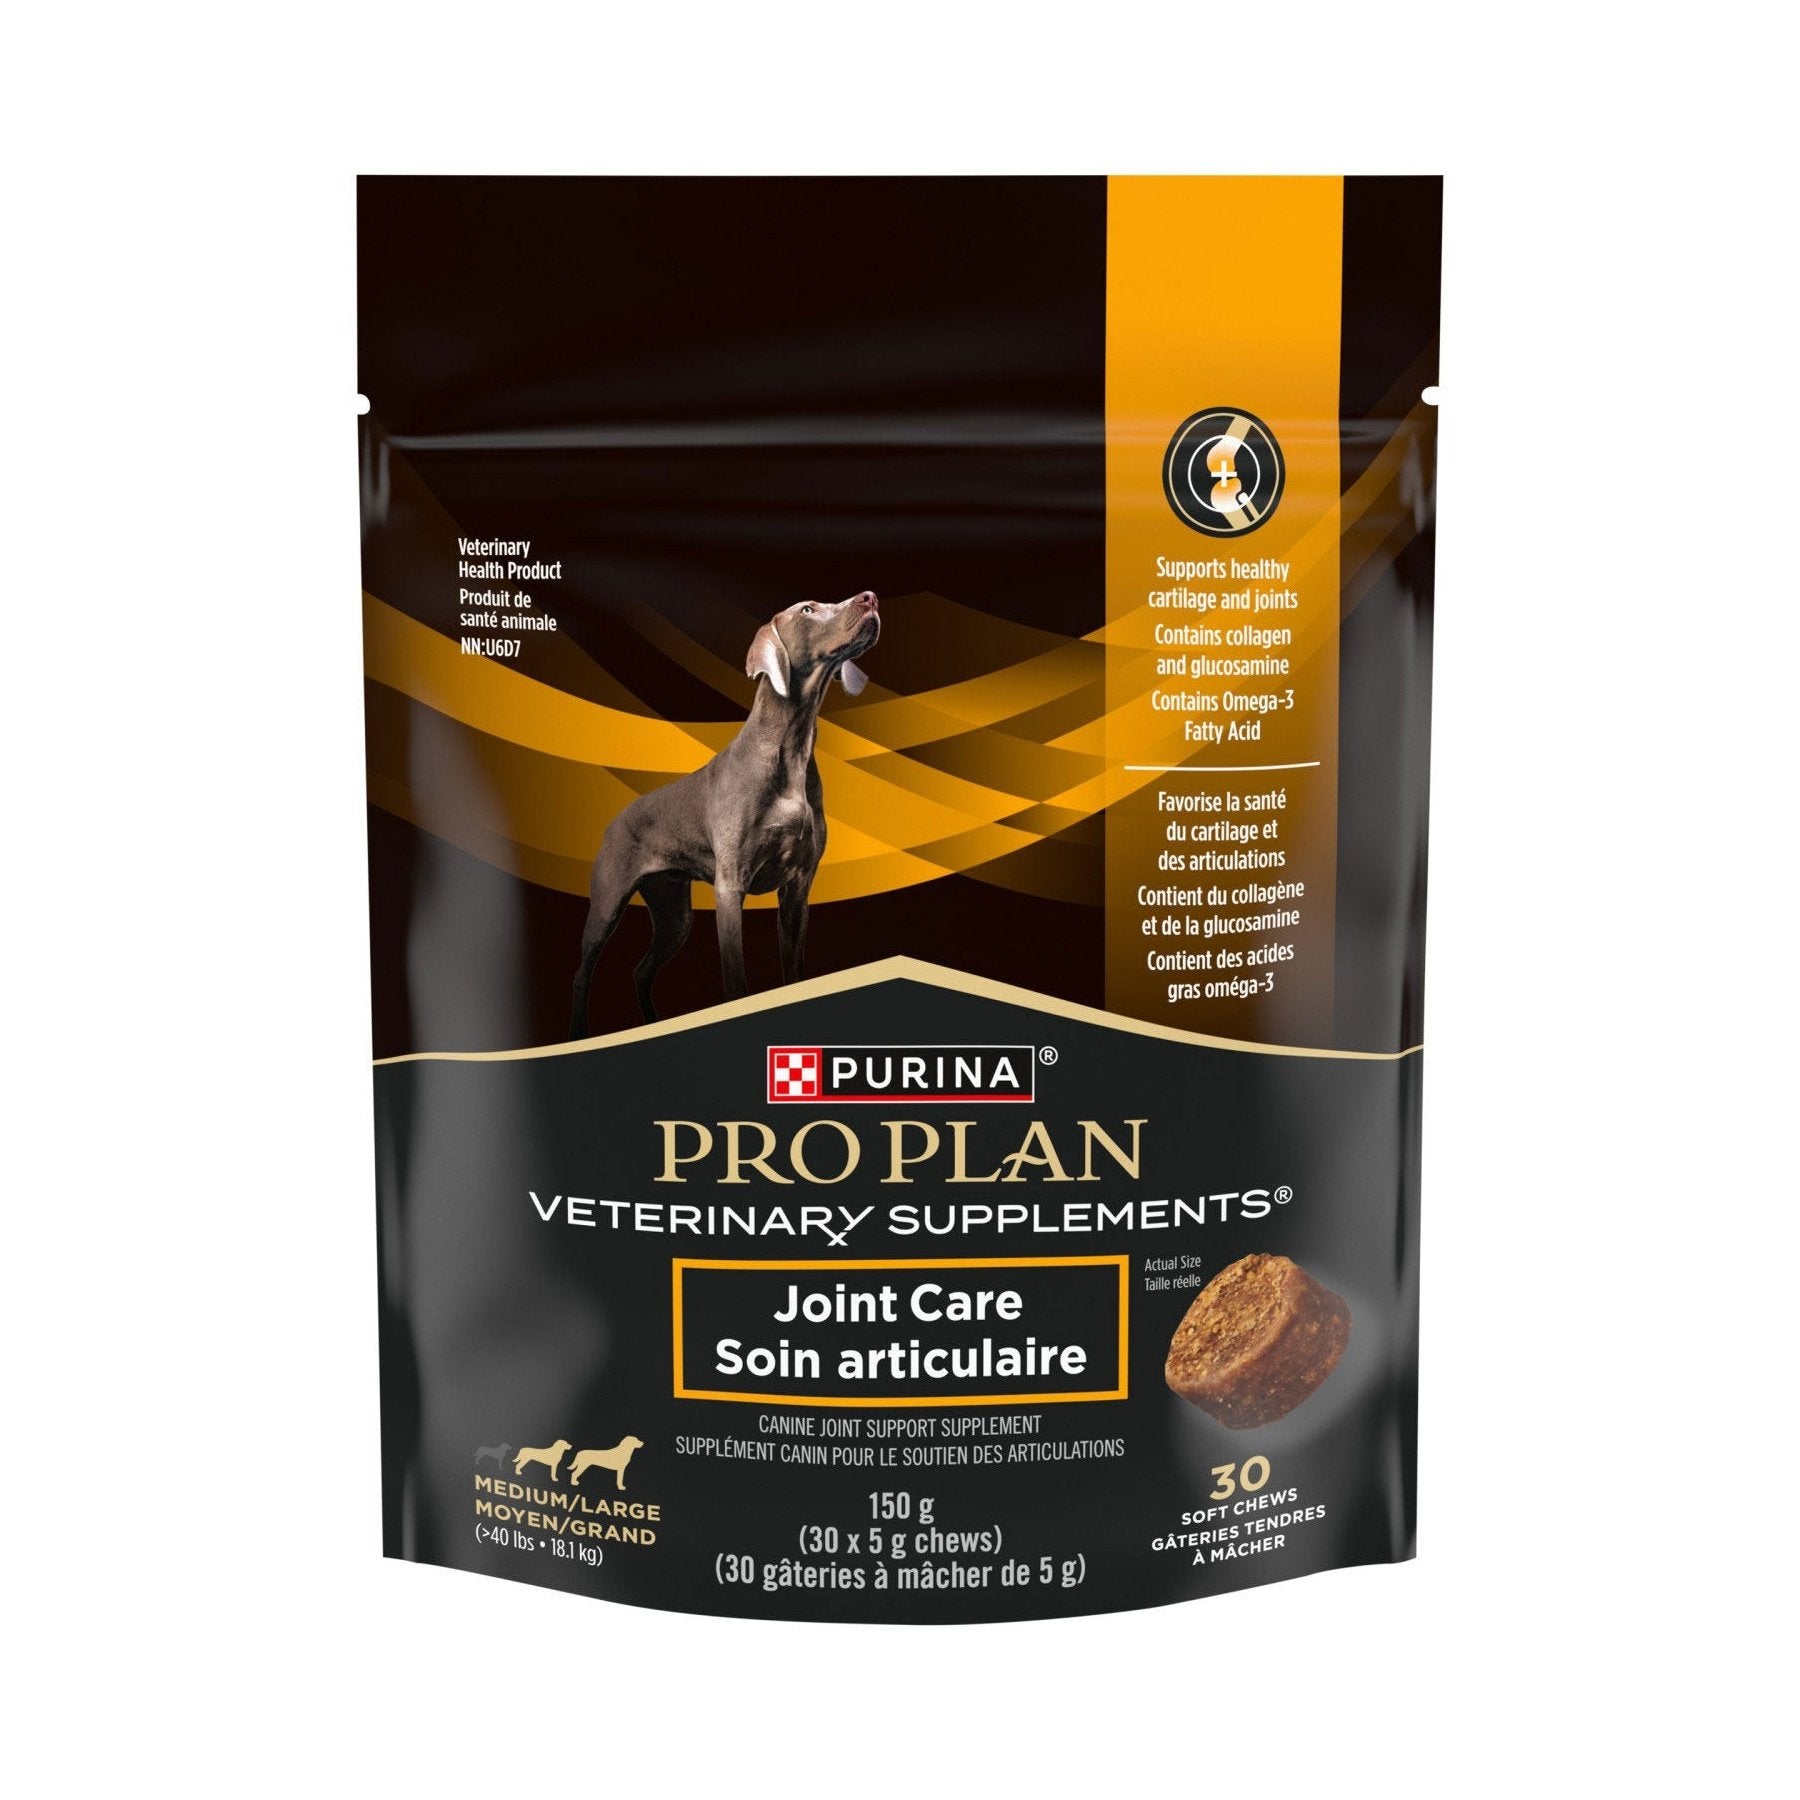 Suppléments canin pour le soutien des articulations pour chiens - Purina Pro Plan